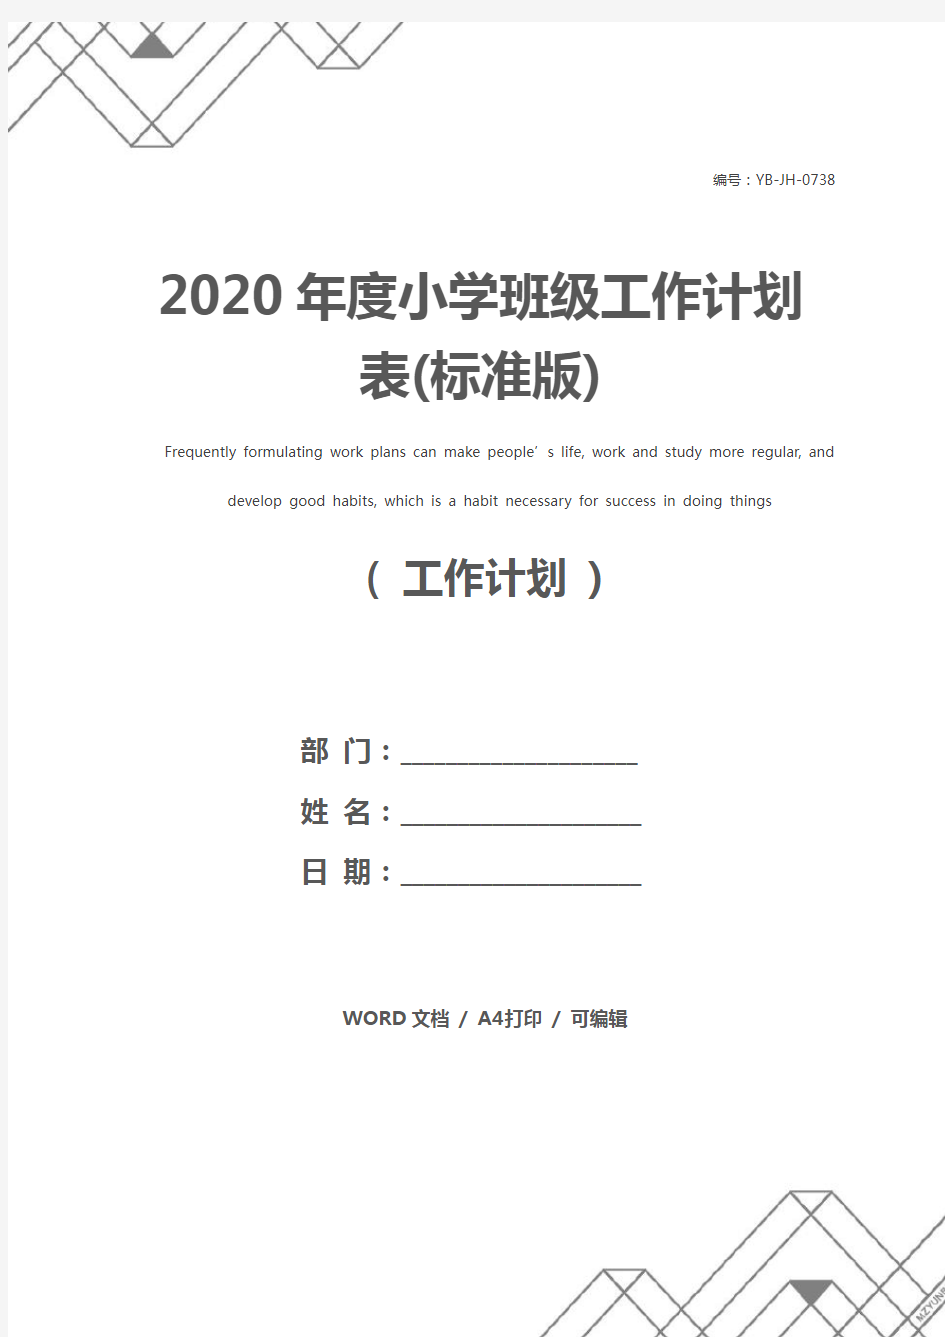 2020年度小学班级工作计划表(标准版)